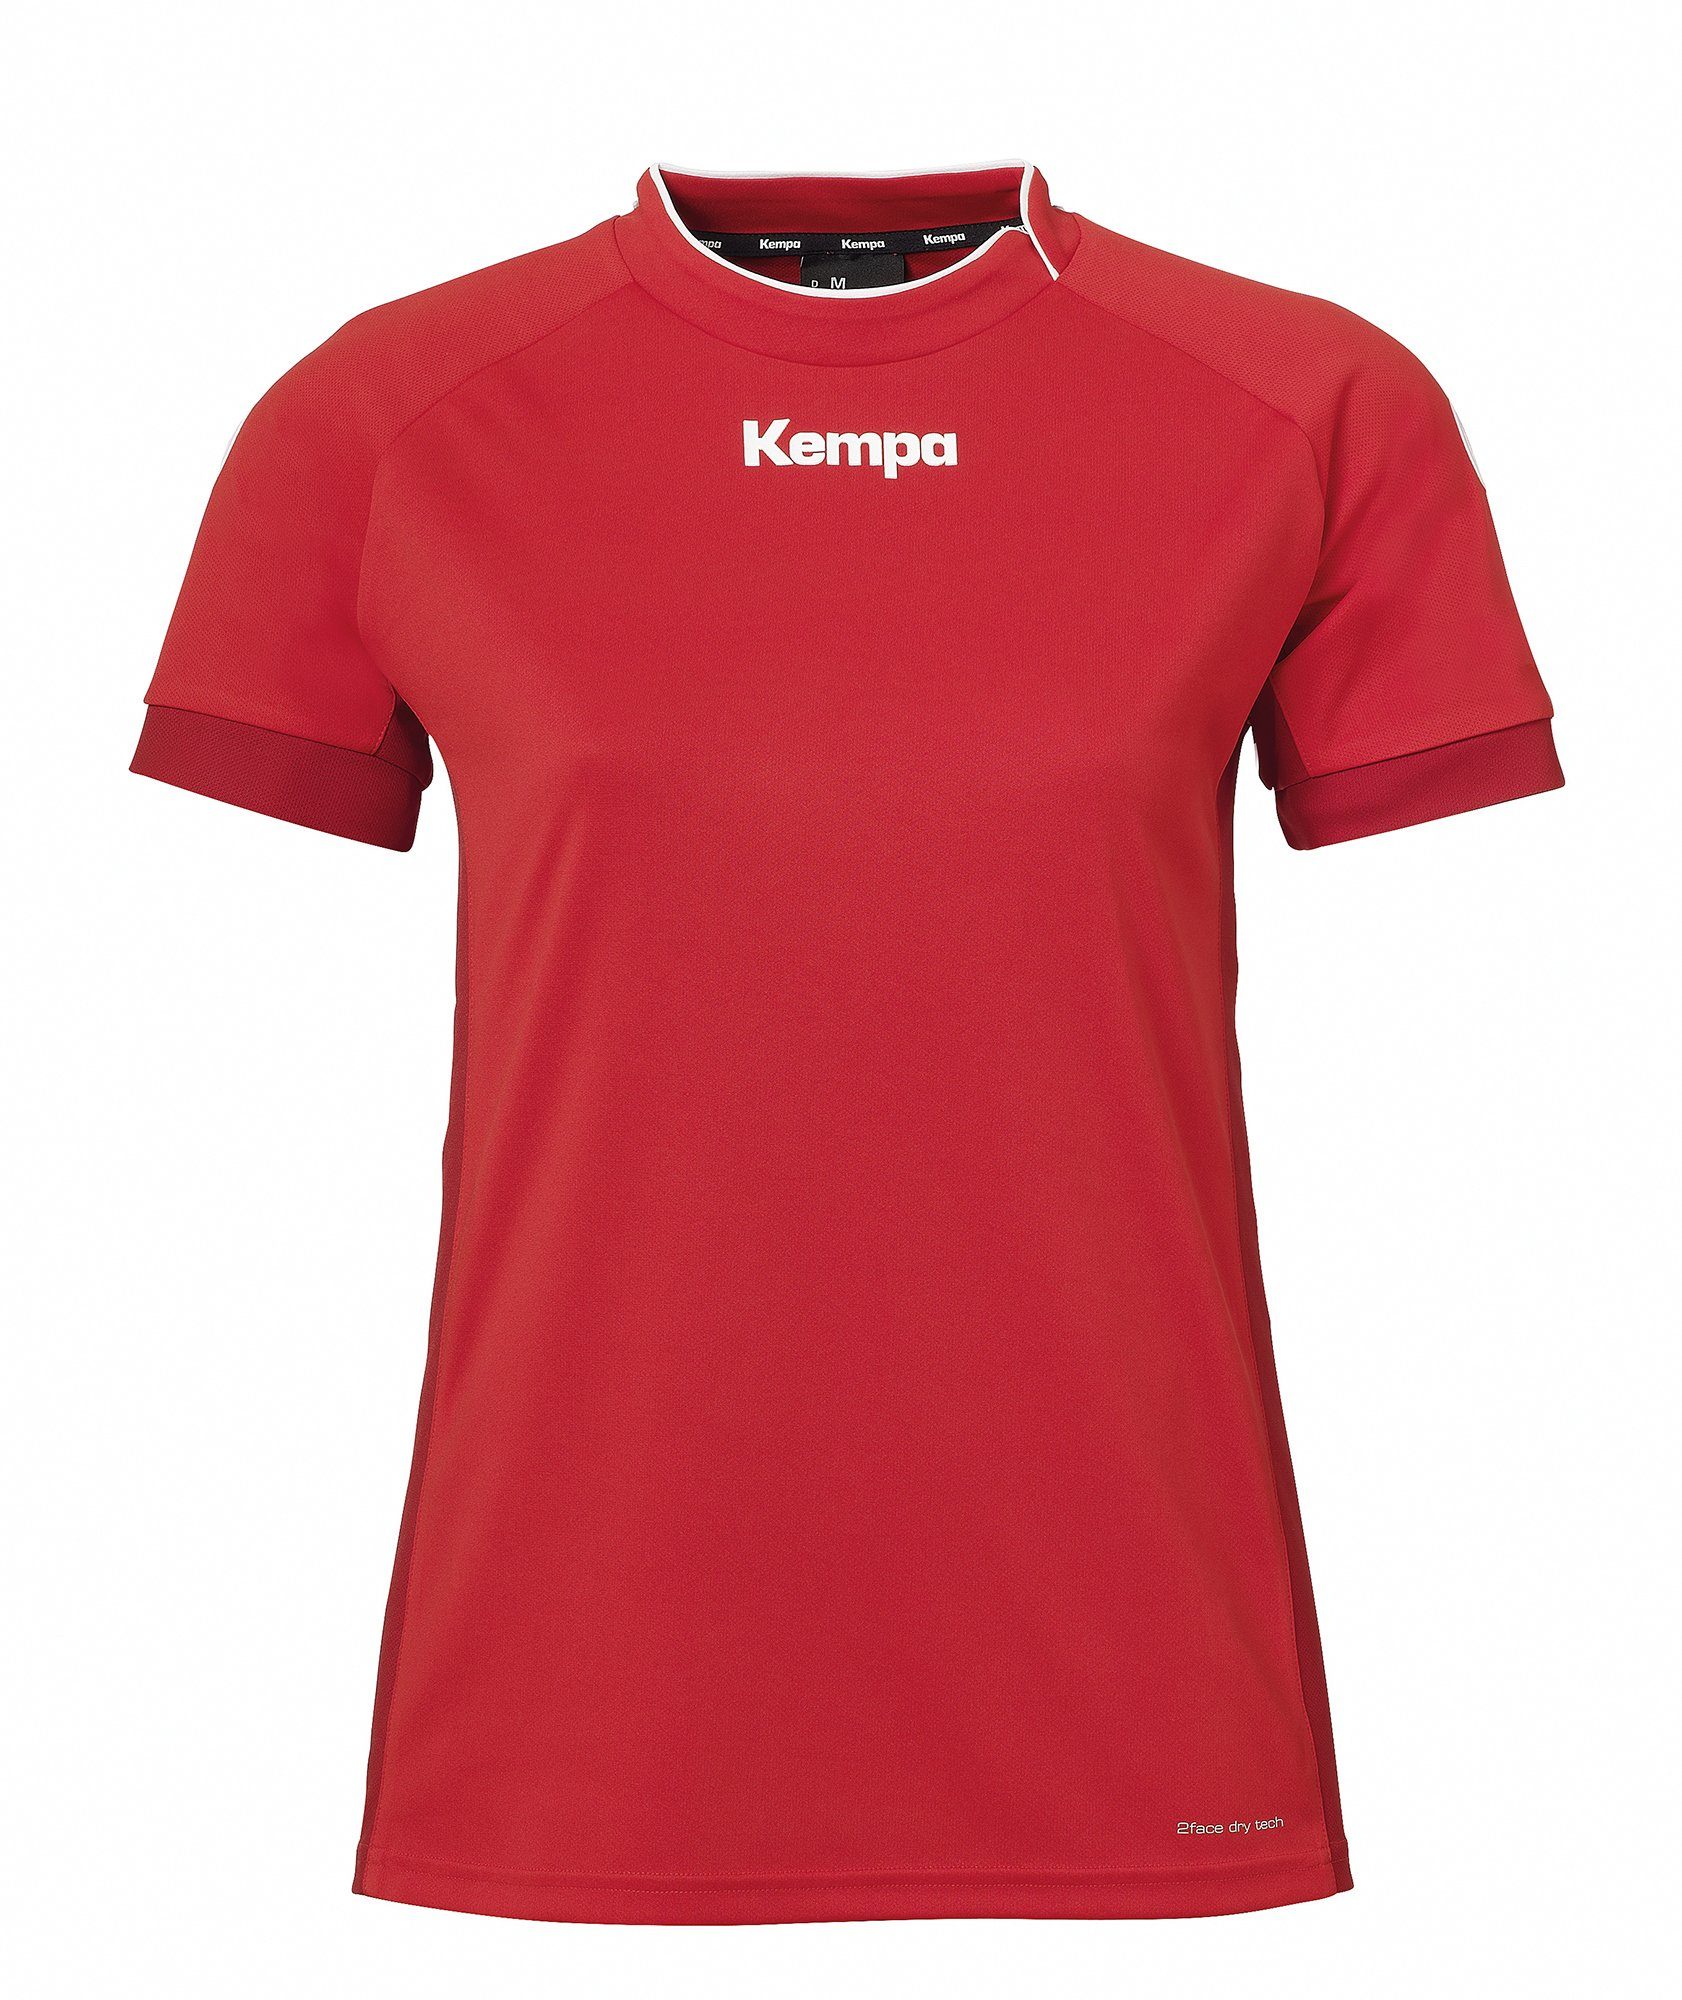 WOMEN Kurzarmshirt schnelltrocknend Kempa rot/chilirot PRIME Shirt Kempa TRIKOT